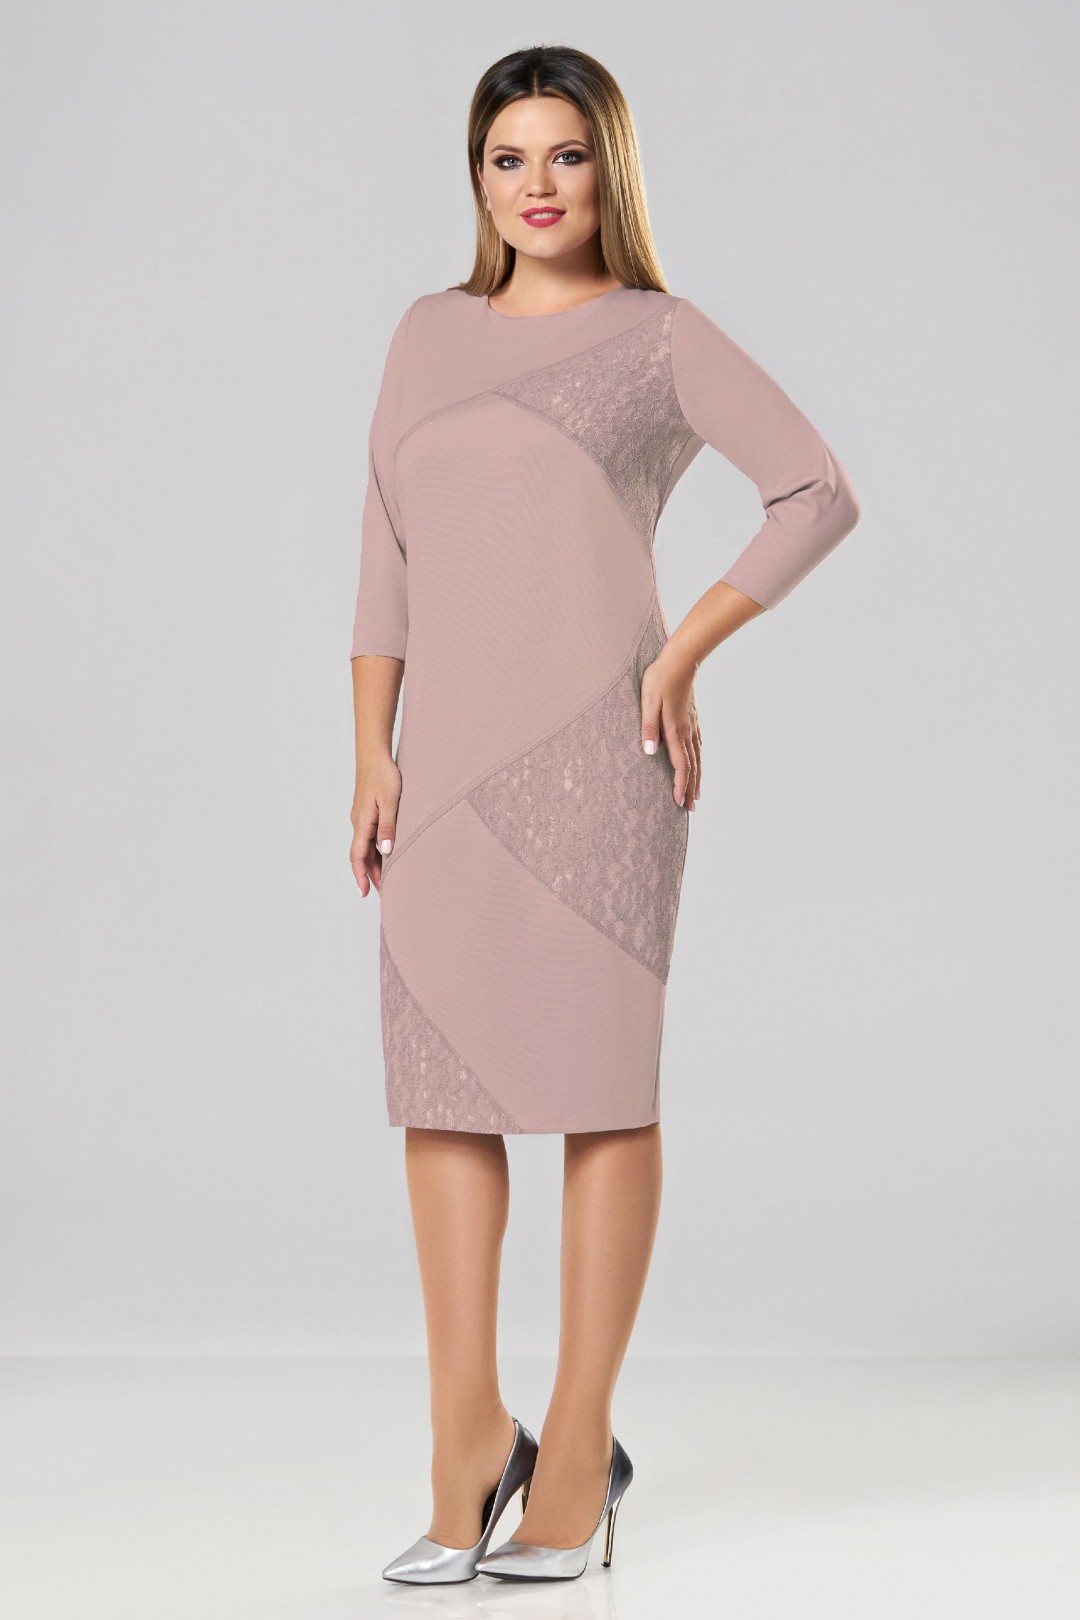 Платье LadySecret 3541-розовый